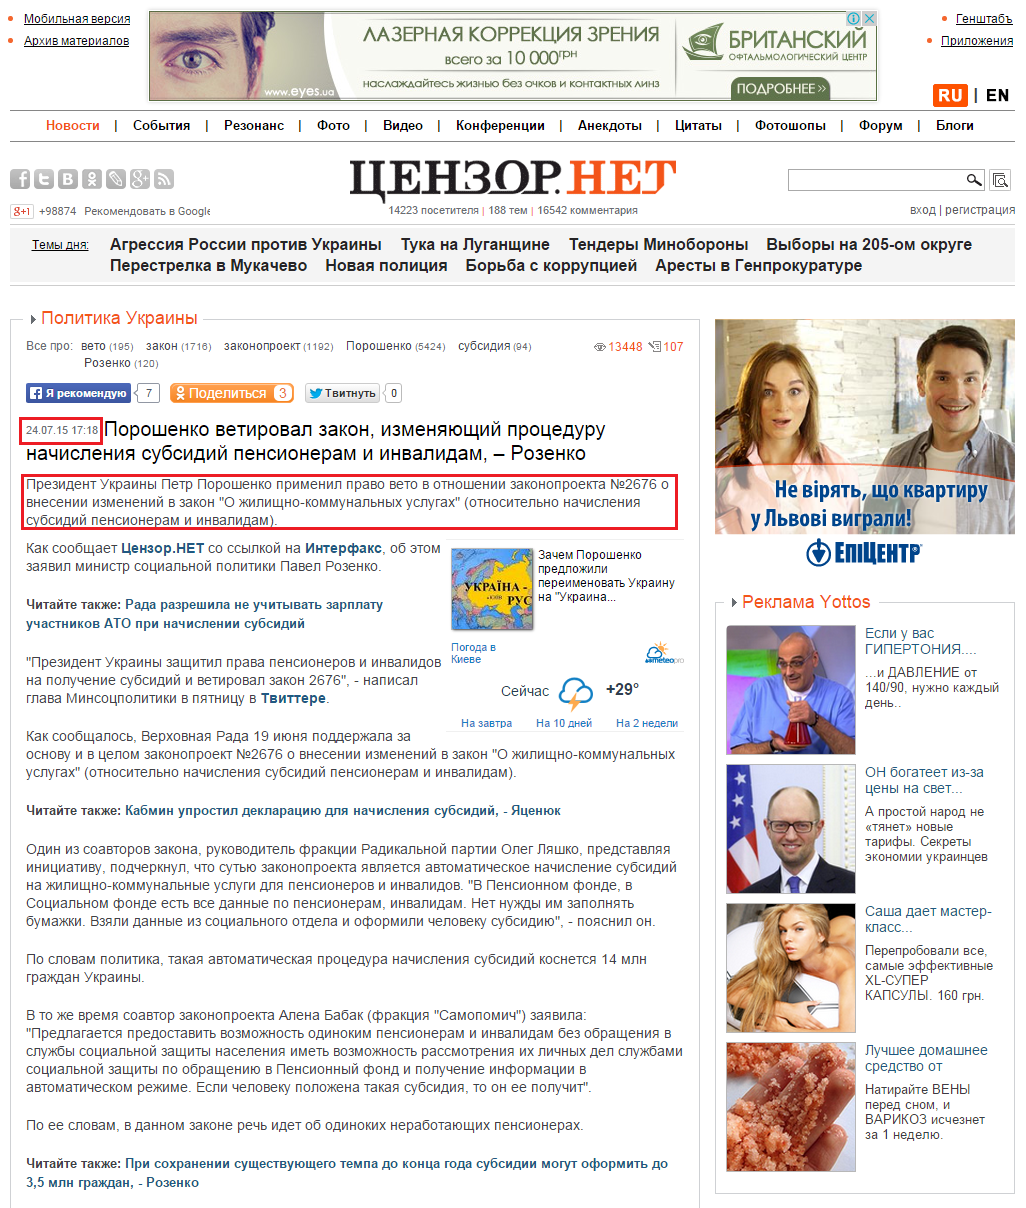 http://censor.net.ua/news/345209/poroshenko_vetiroval_zakon_izmenyayuschiyi_protseduru_nachisleniya_subsidiyi_pensioneram_i_invalidam